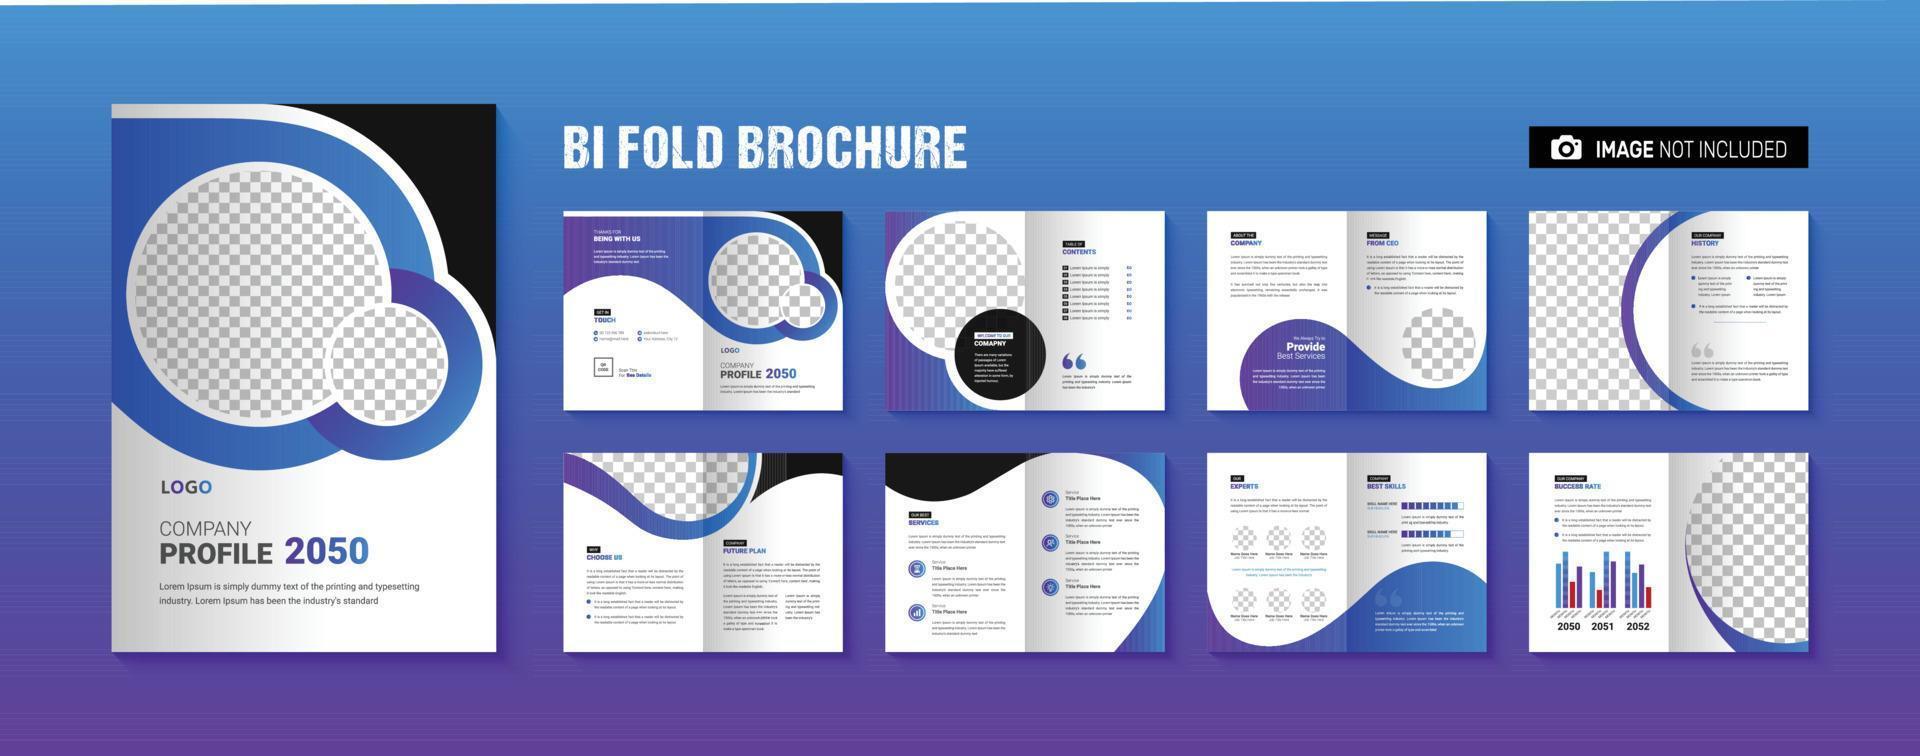 företagsprofil broschyr mall design kreativ modern företagsverksamhet broschyr layout vektor